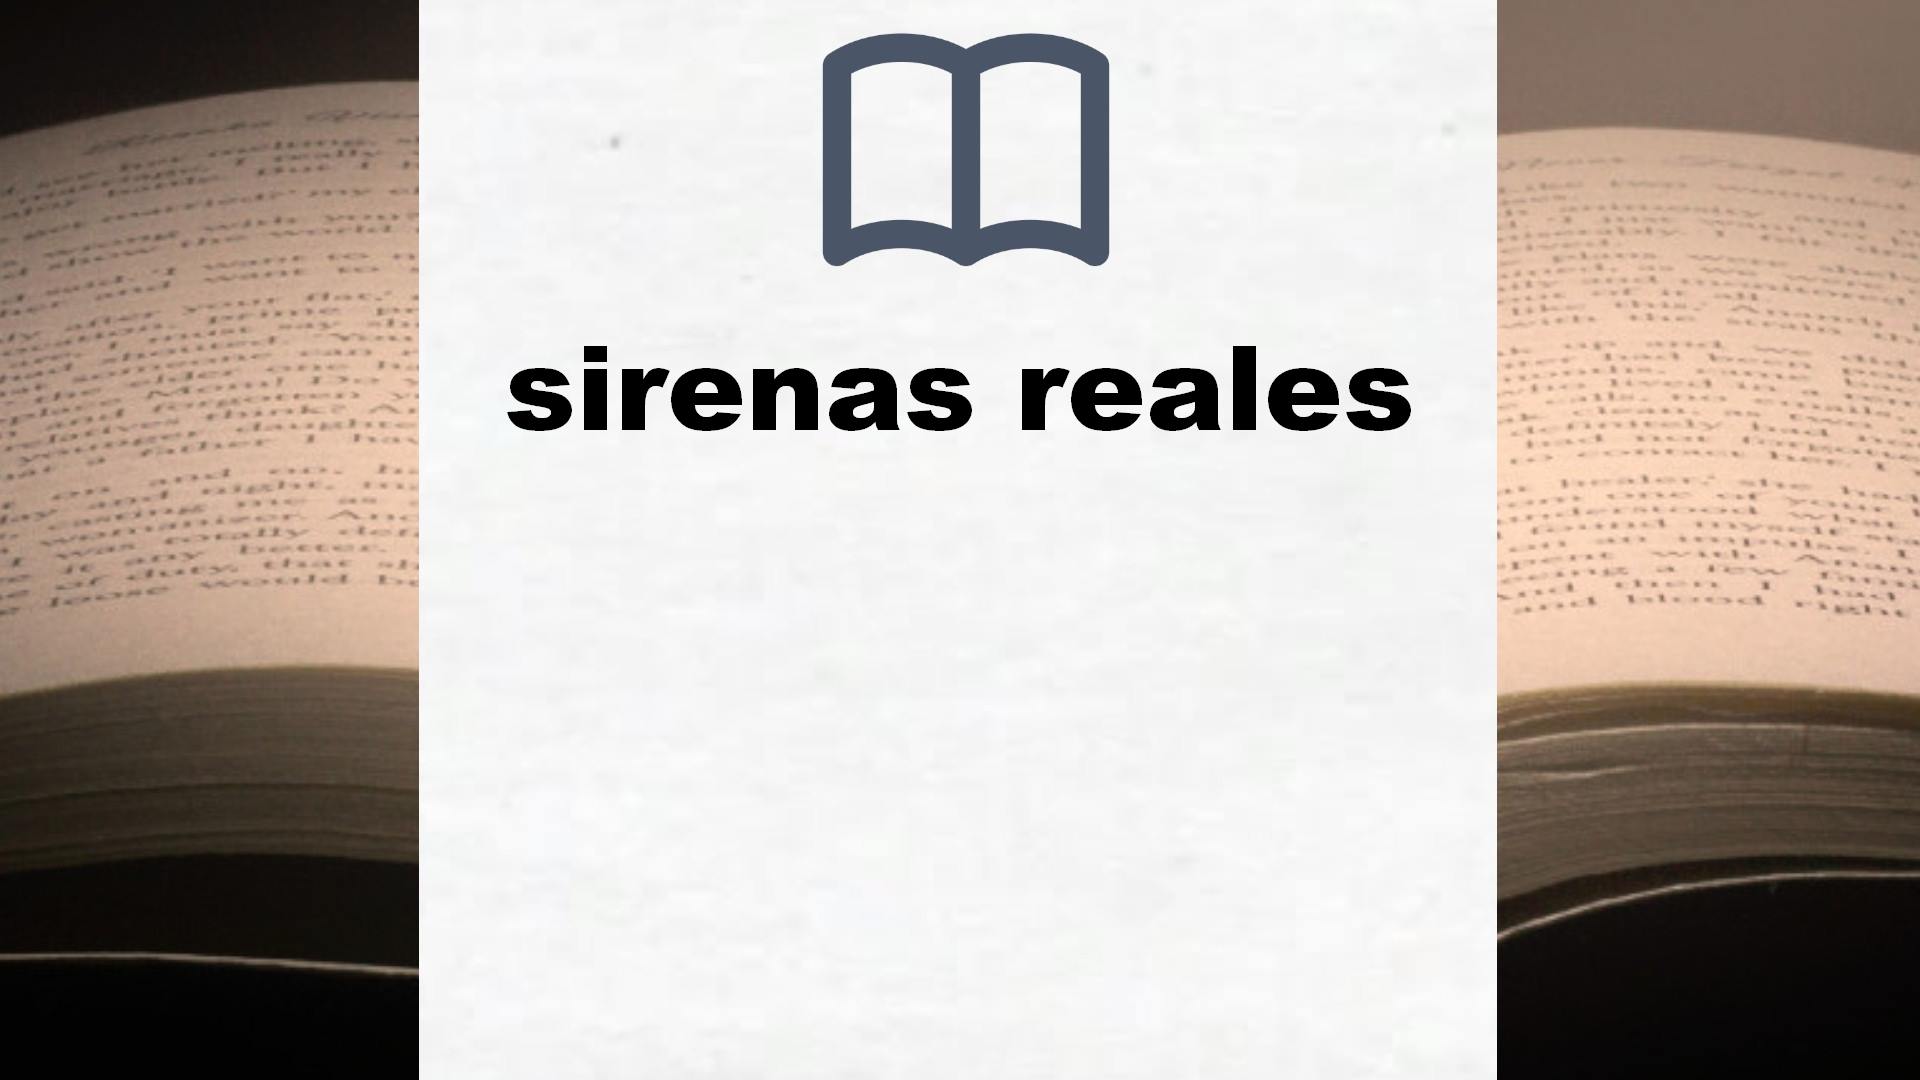 Libros sobre sirenas reales